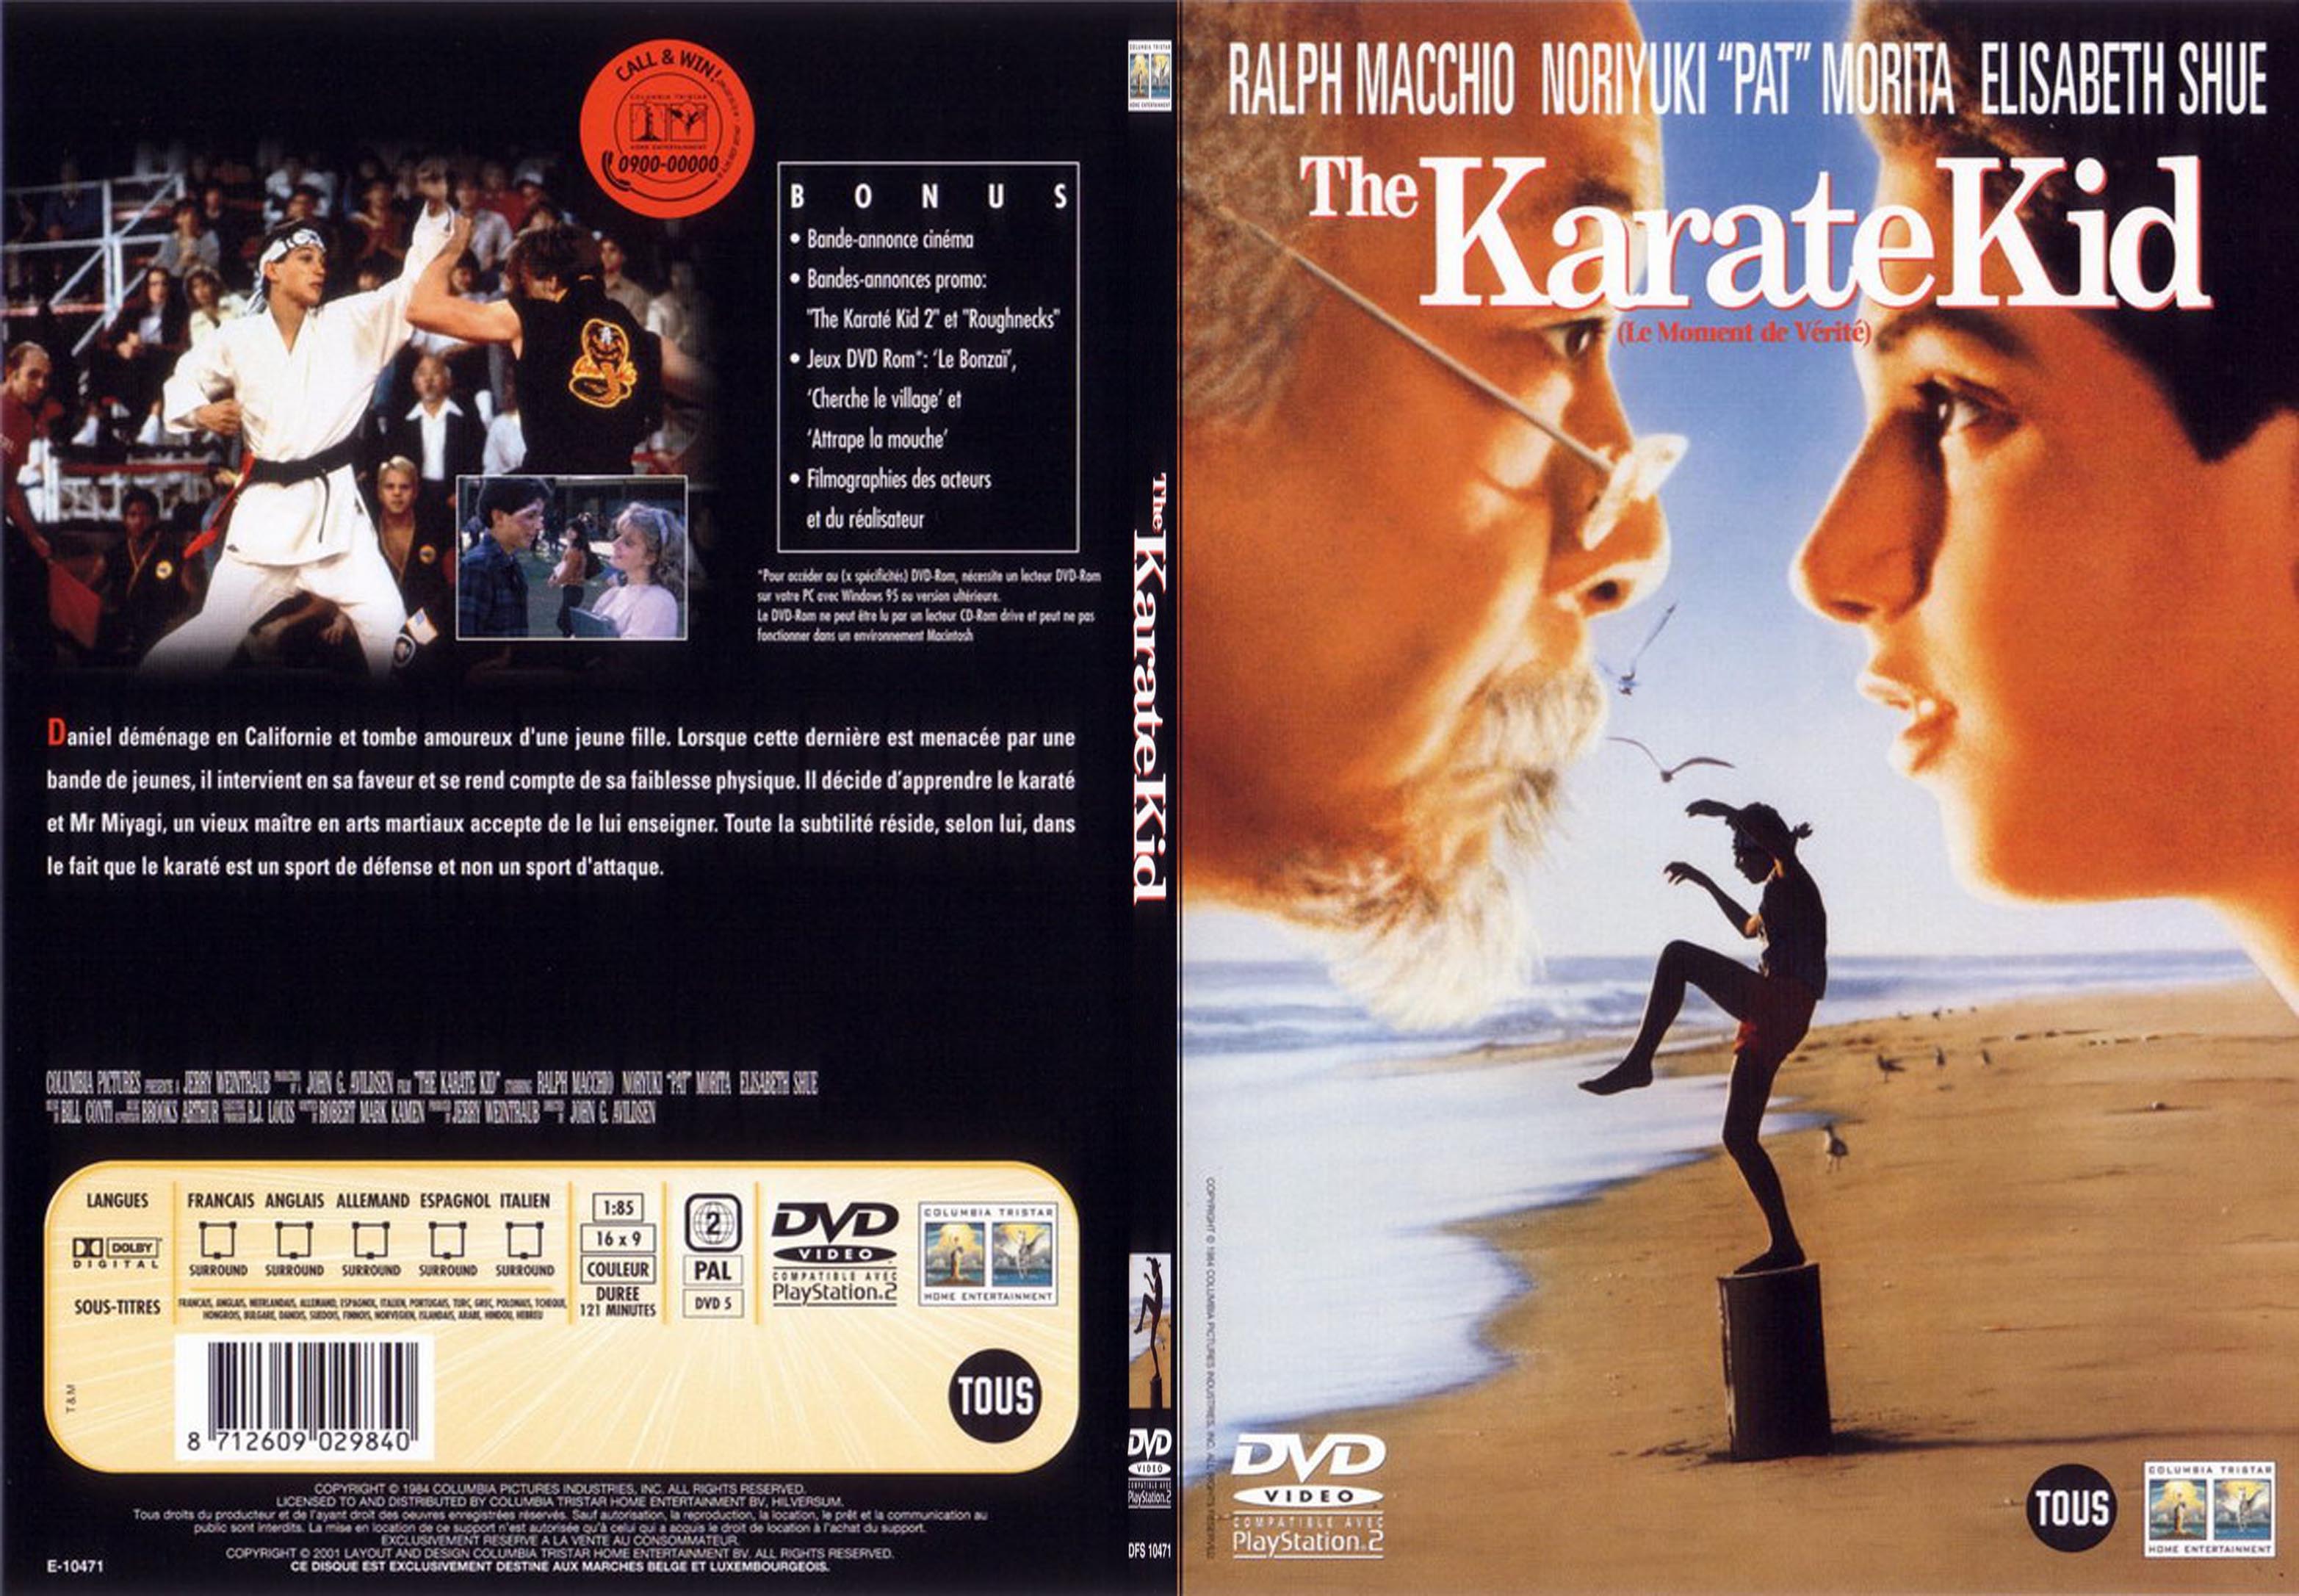 Jaquette DVD Karate kid - SLIM